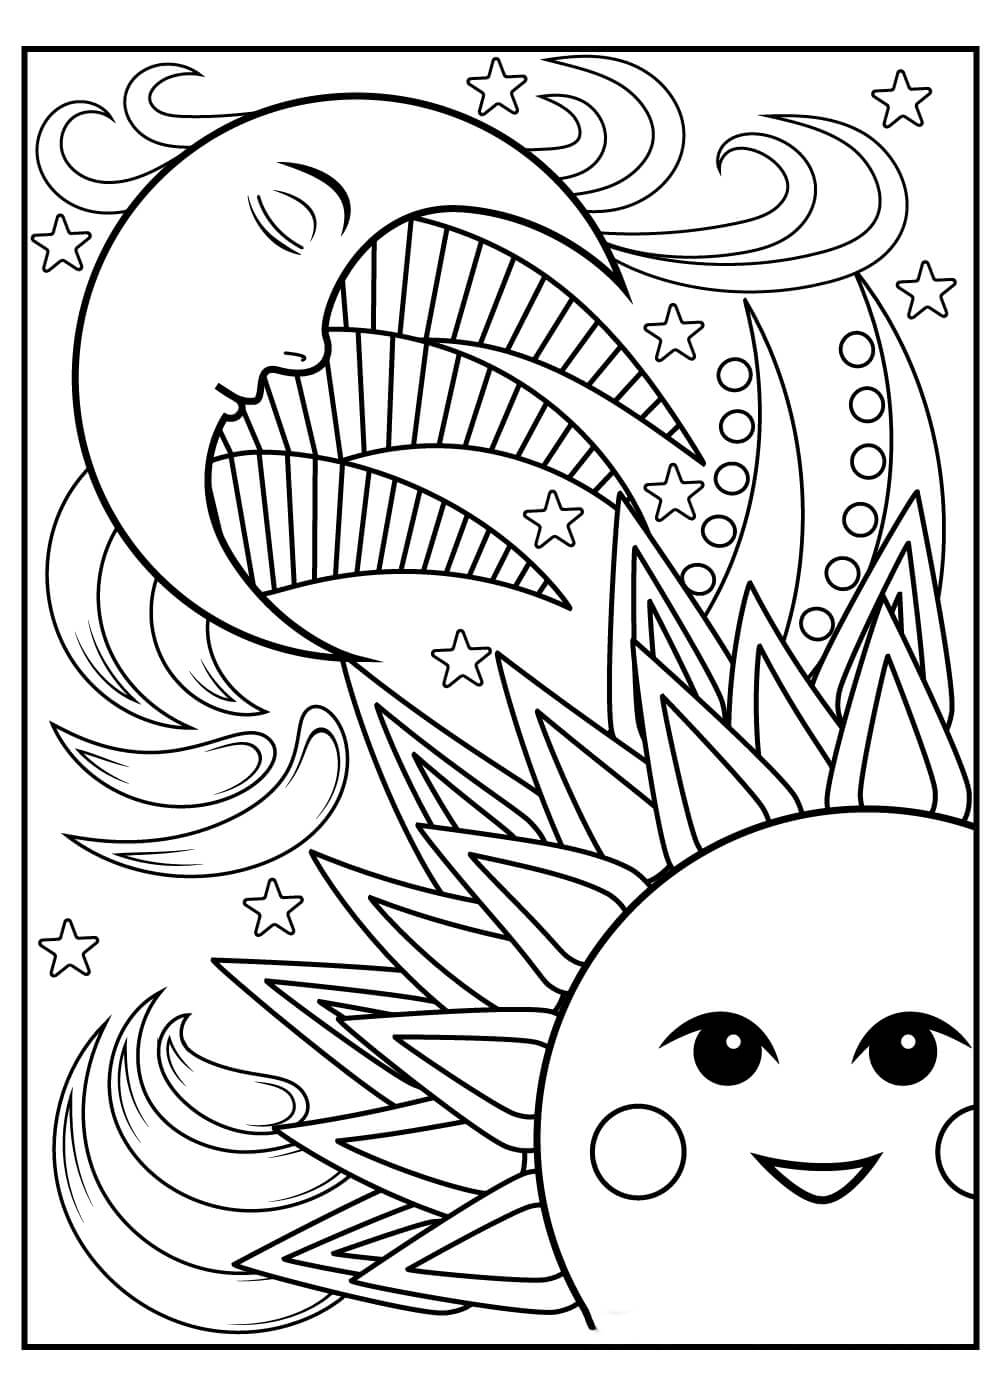 Soleil et Lune pour Adultes coloring page